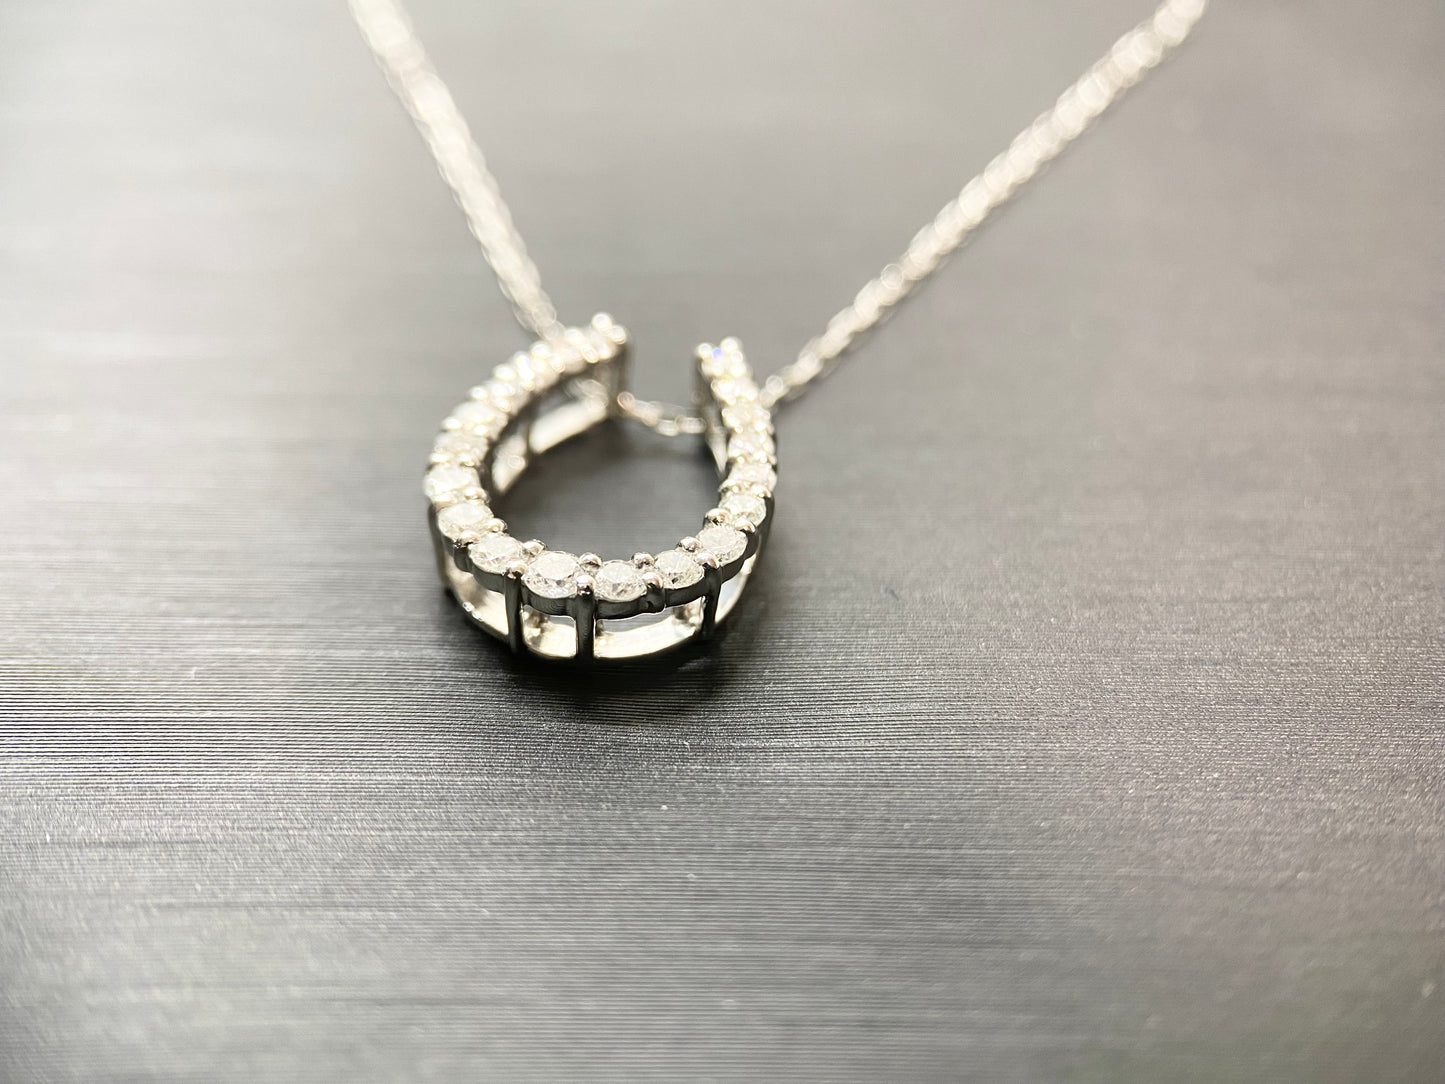 New] Diamond Jewelry Necklace with Horseshoe Image